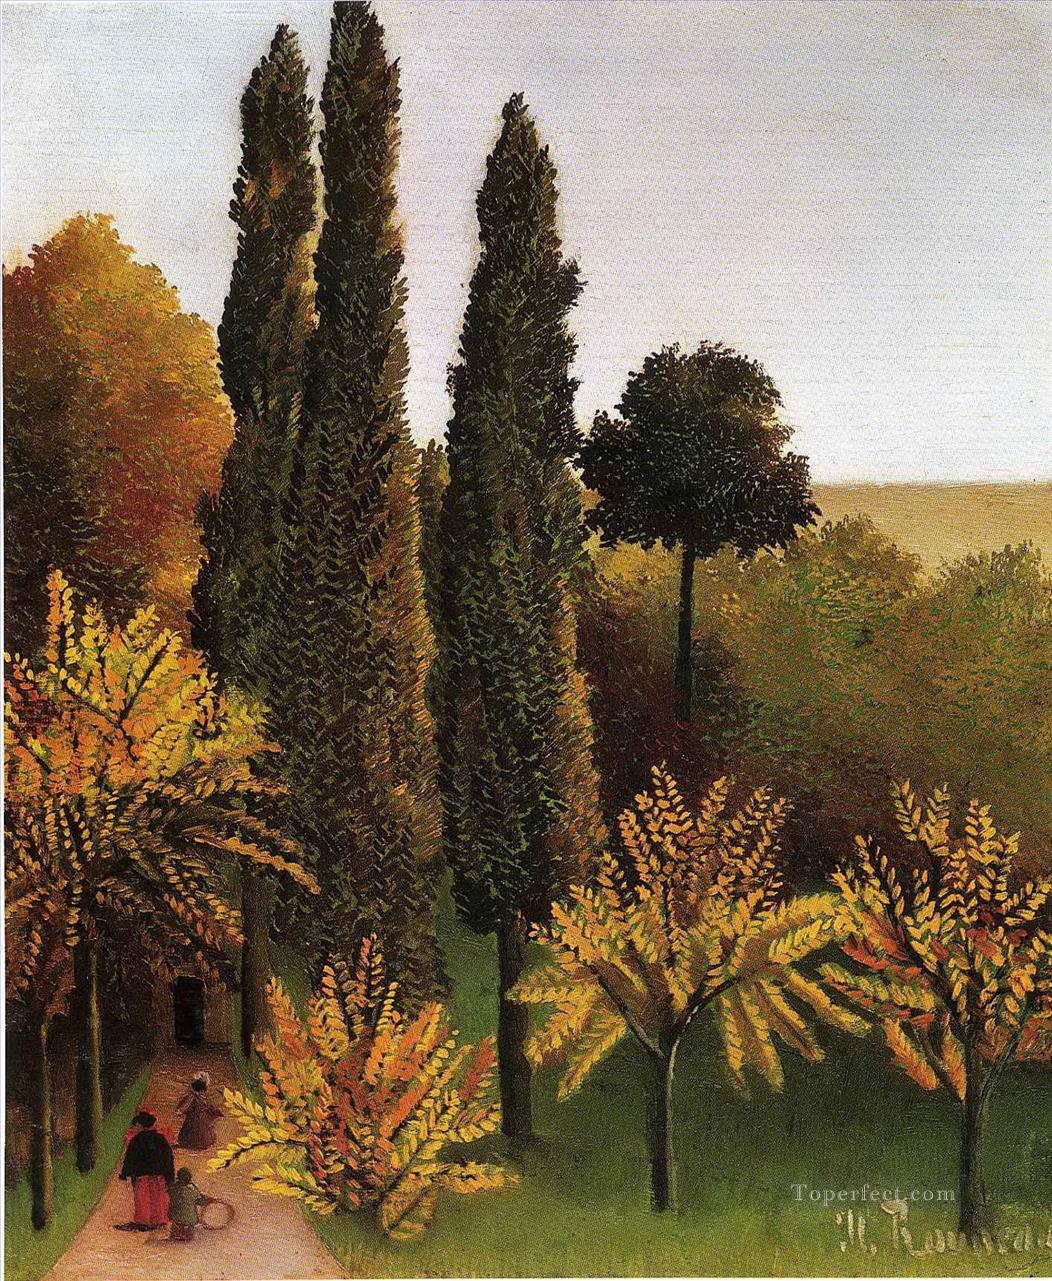 ビュット・ショーモン公園を歩く 1909年 アンリ・ルソー ポスト印象派 素朴原始主義油絵